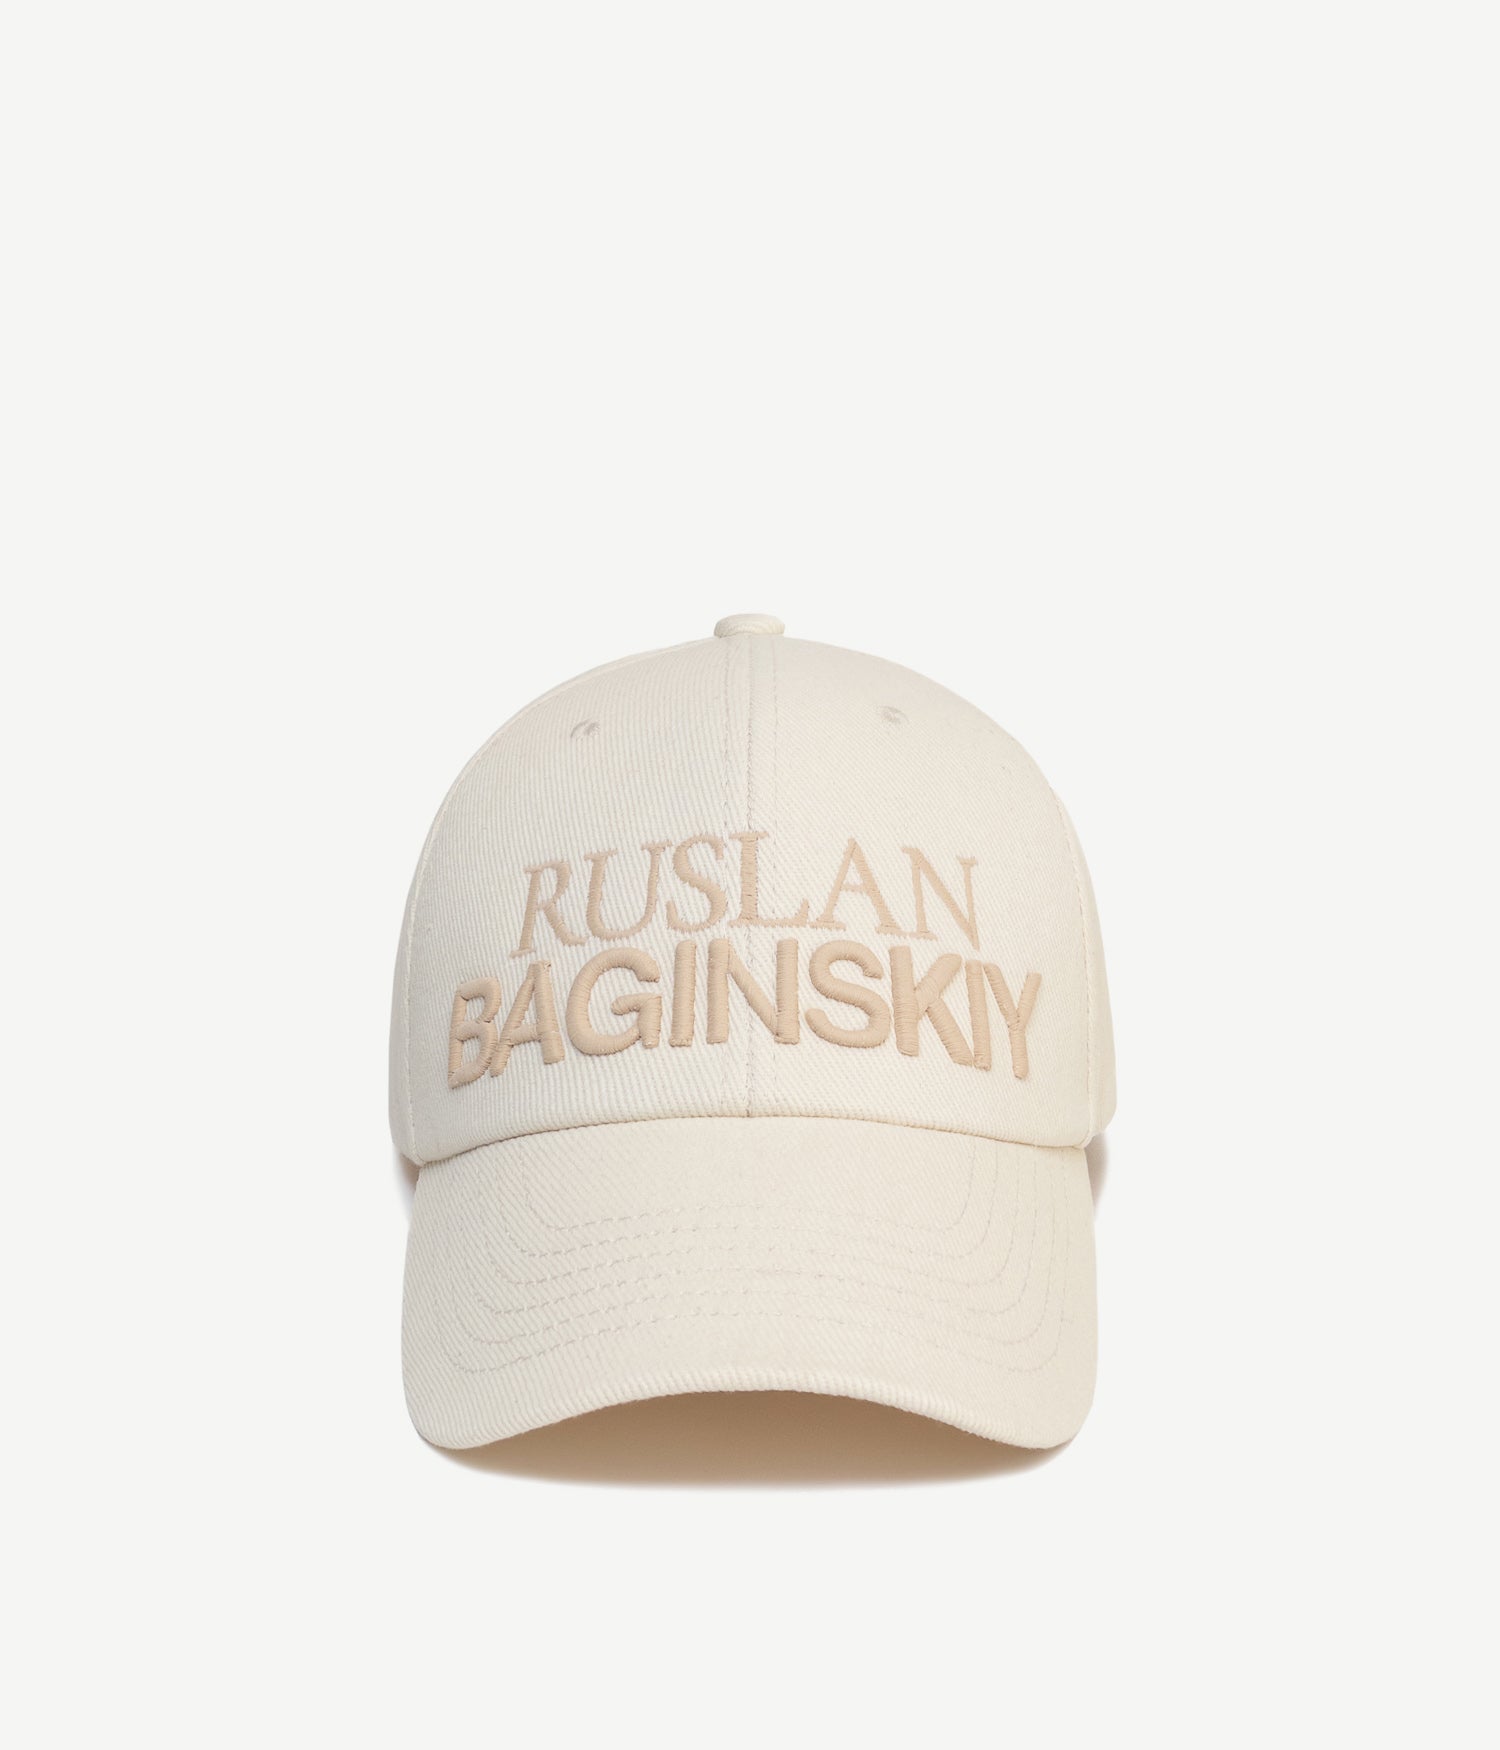 Ruslan Baginskiy Baseball Caps